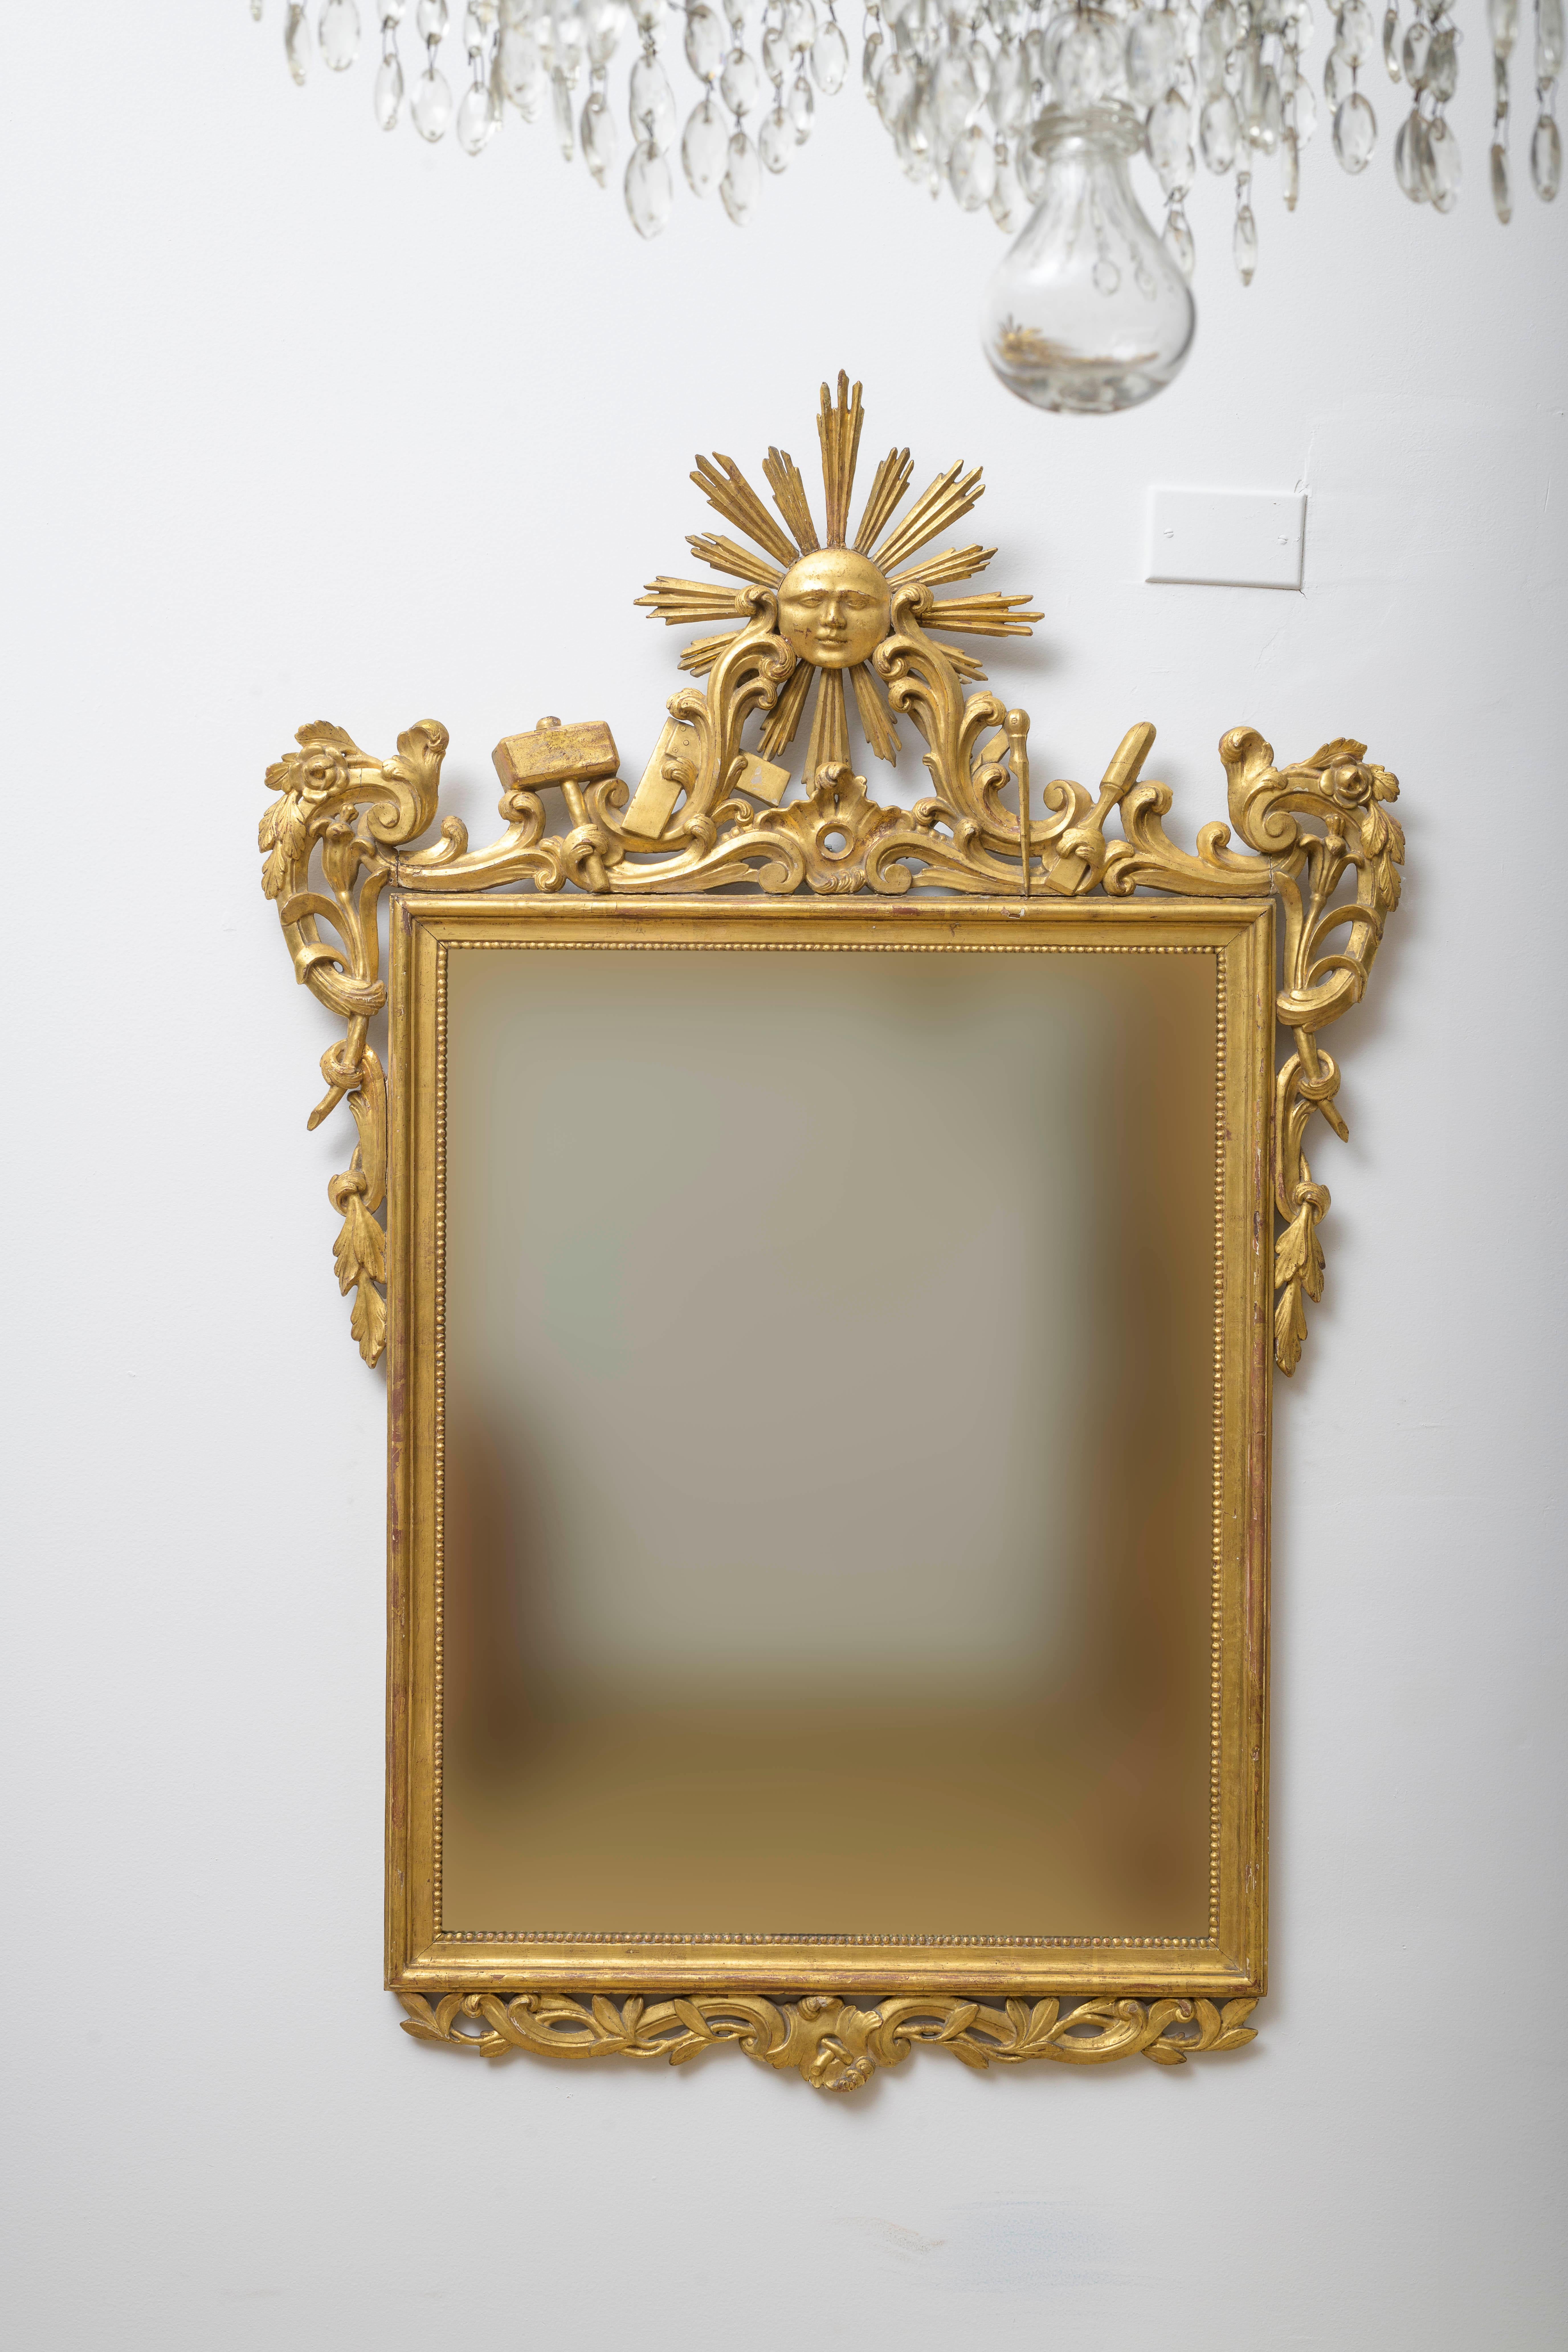 Miroir du milieu du XVIIIe siècle avec symboles francs-maçons, Louis XV, Bois percé, finement sculpté représentant des outils de maçons et avec un cartouche central en forme de dieu solaire, des symboles francs-maçons, des feuilles et une frise